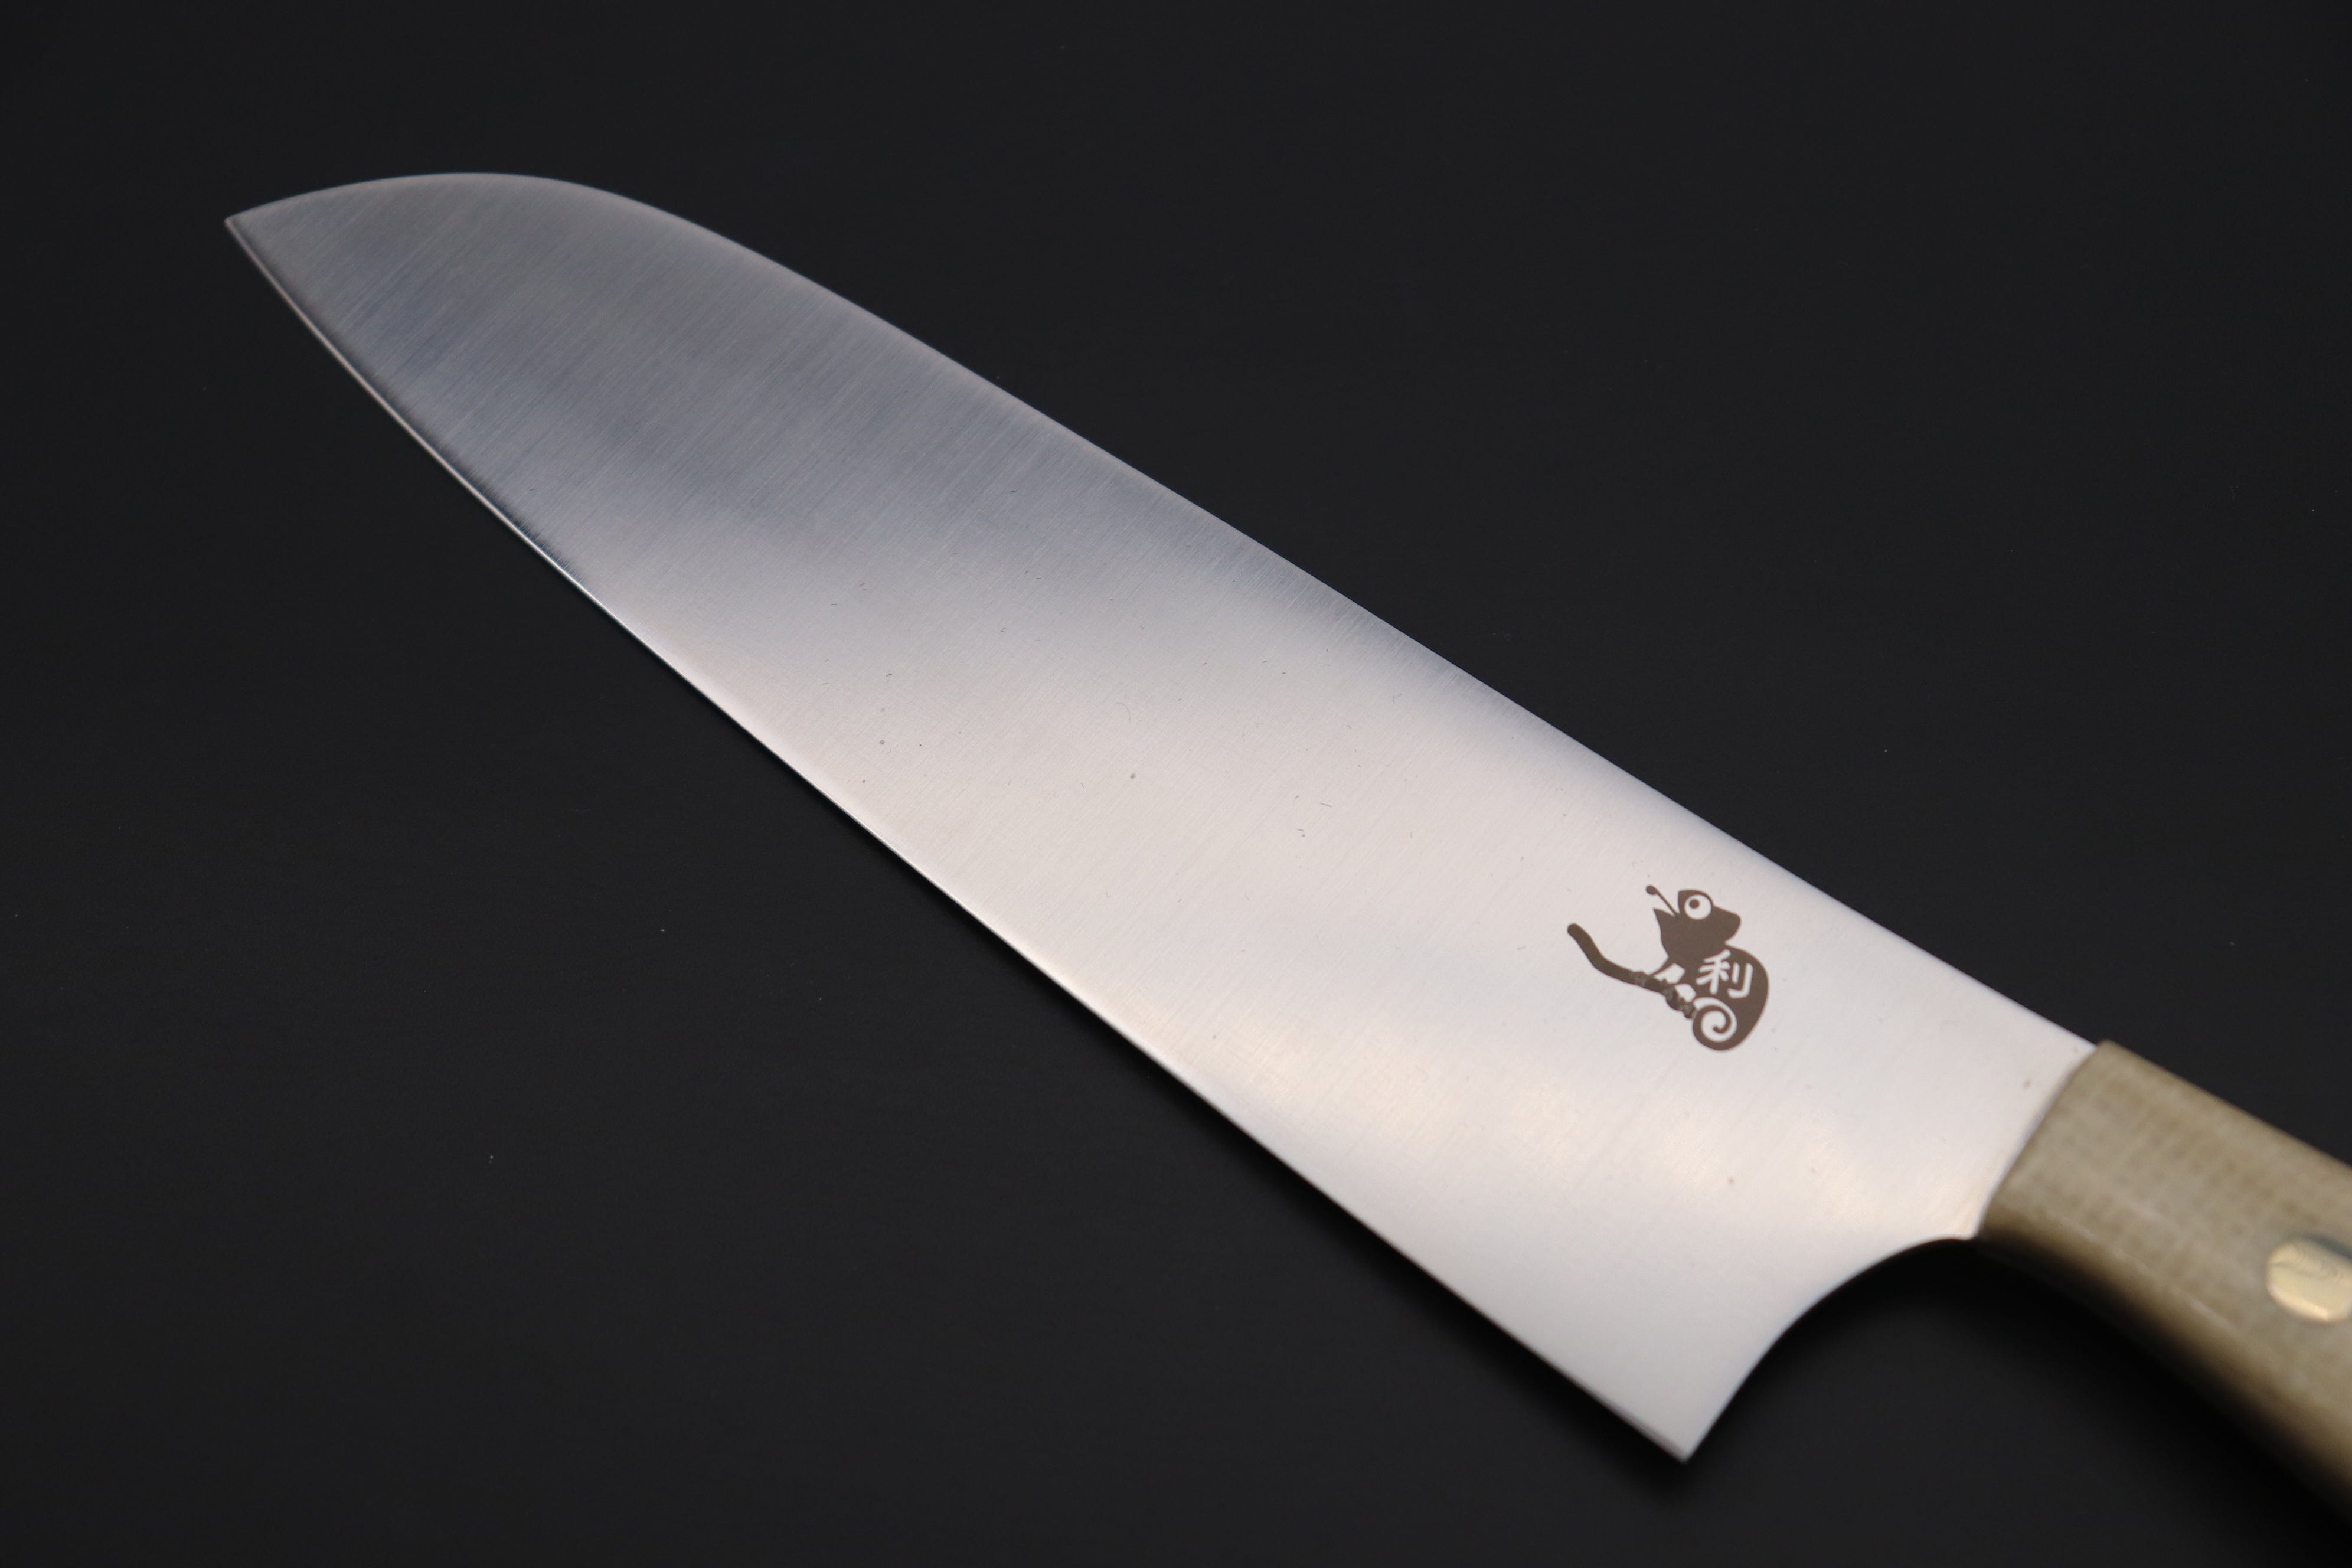 https://japanesechefsknife.com/cdn/shop/files/others-santoku-toshiyuki-takahashi-custom-kitchen-knife-tt-15-santoku-175mm-6-8-inch-43013156405531.jpg?v=1696222491